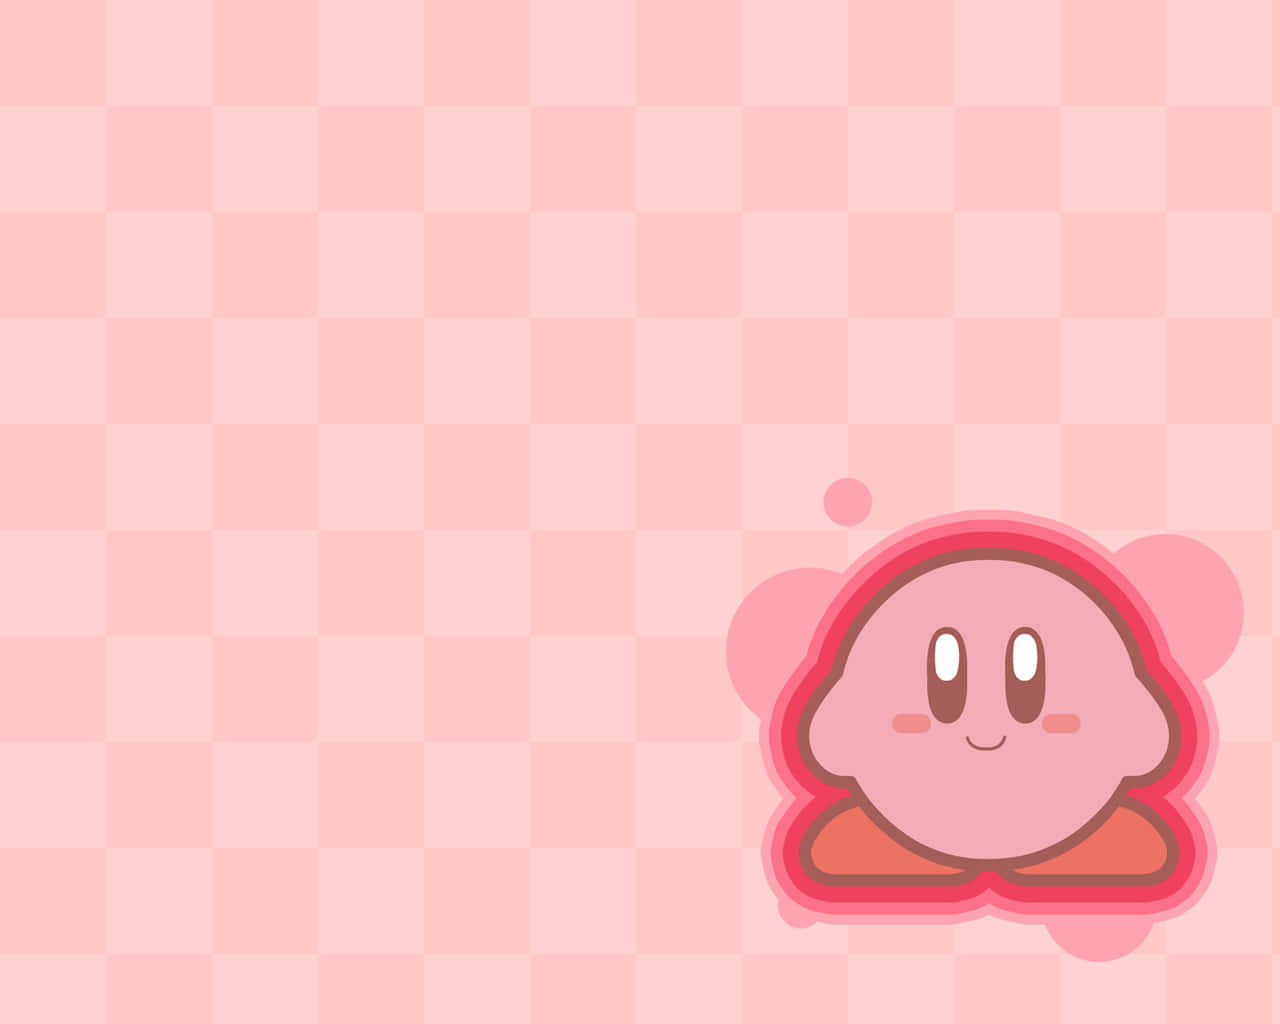 Tag ud på en eventyr med Kirby - den modige luftskuntil, som forsvarer Drømmeland mod onde kræfter!